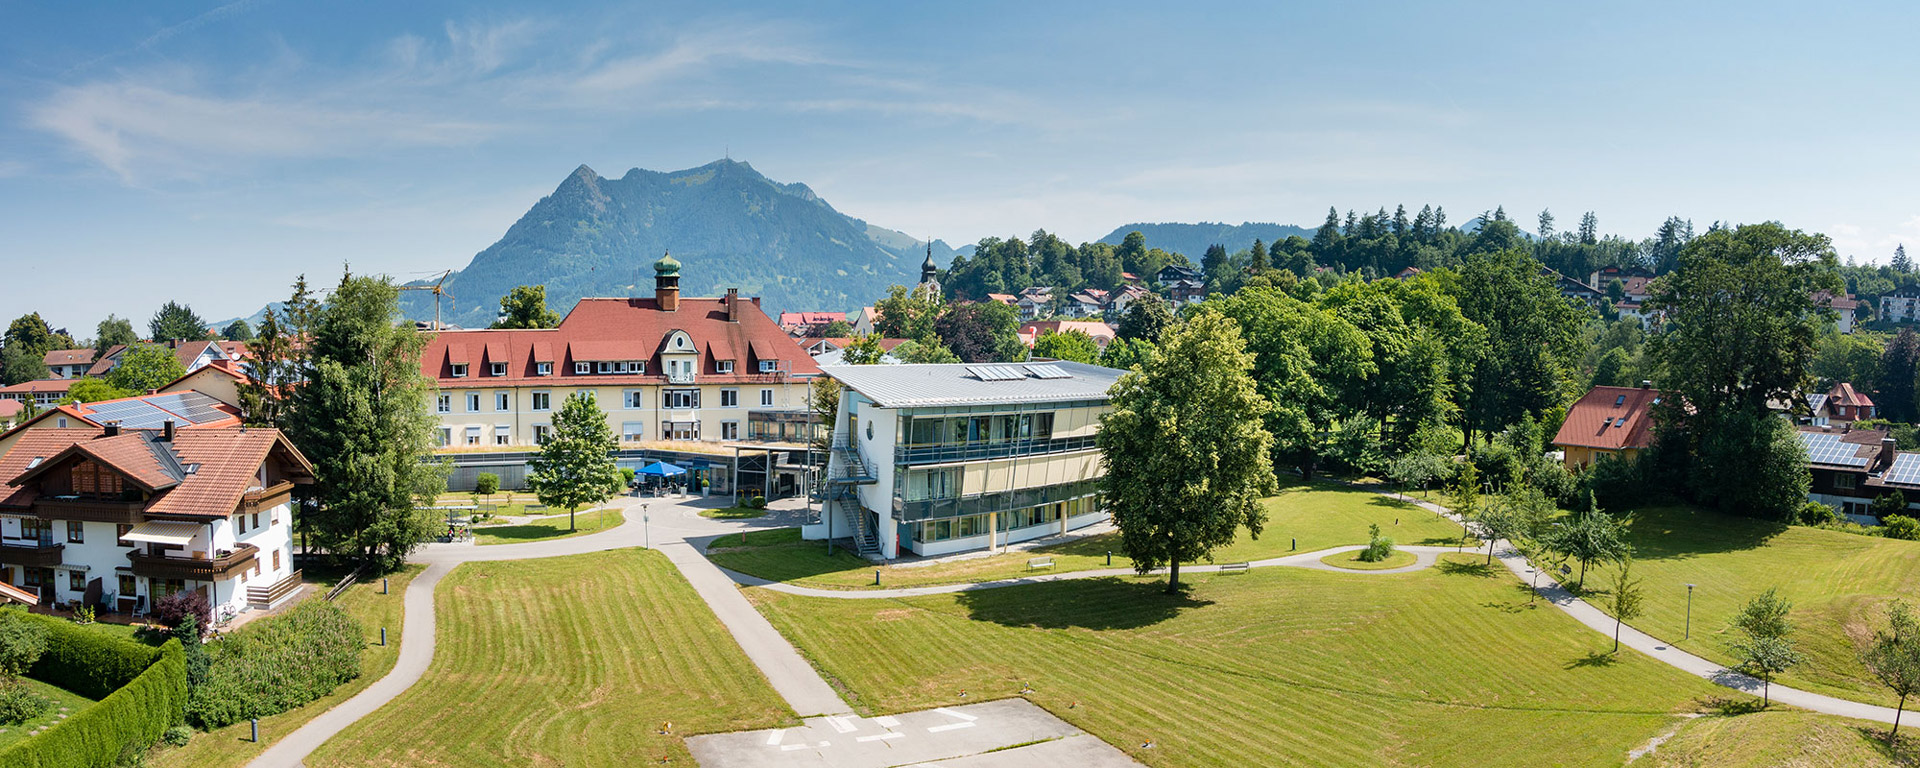 Foto der Geriatrie-Kliniken Sonthofen mit Bergsicht des Klinikverbund Allgäu